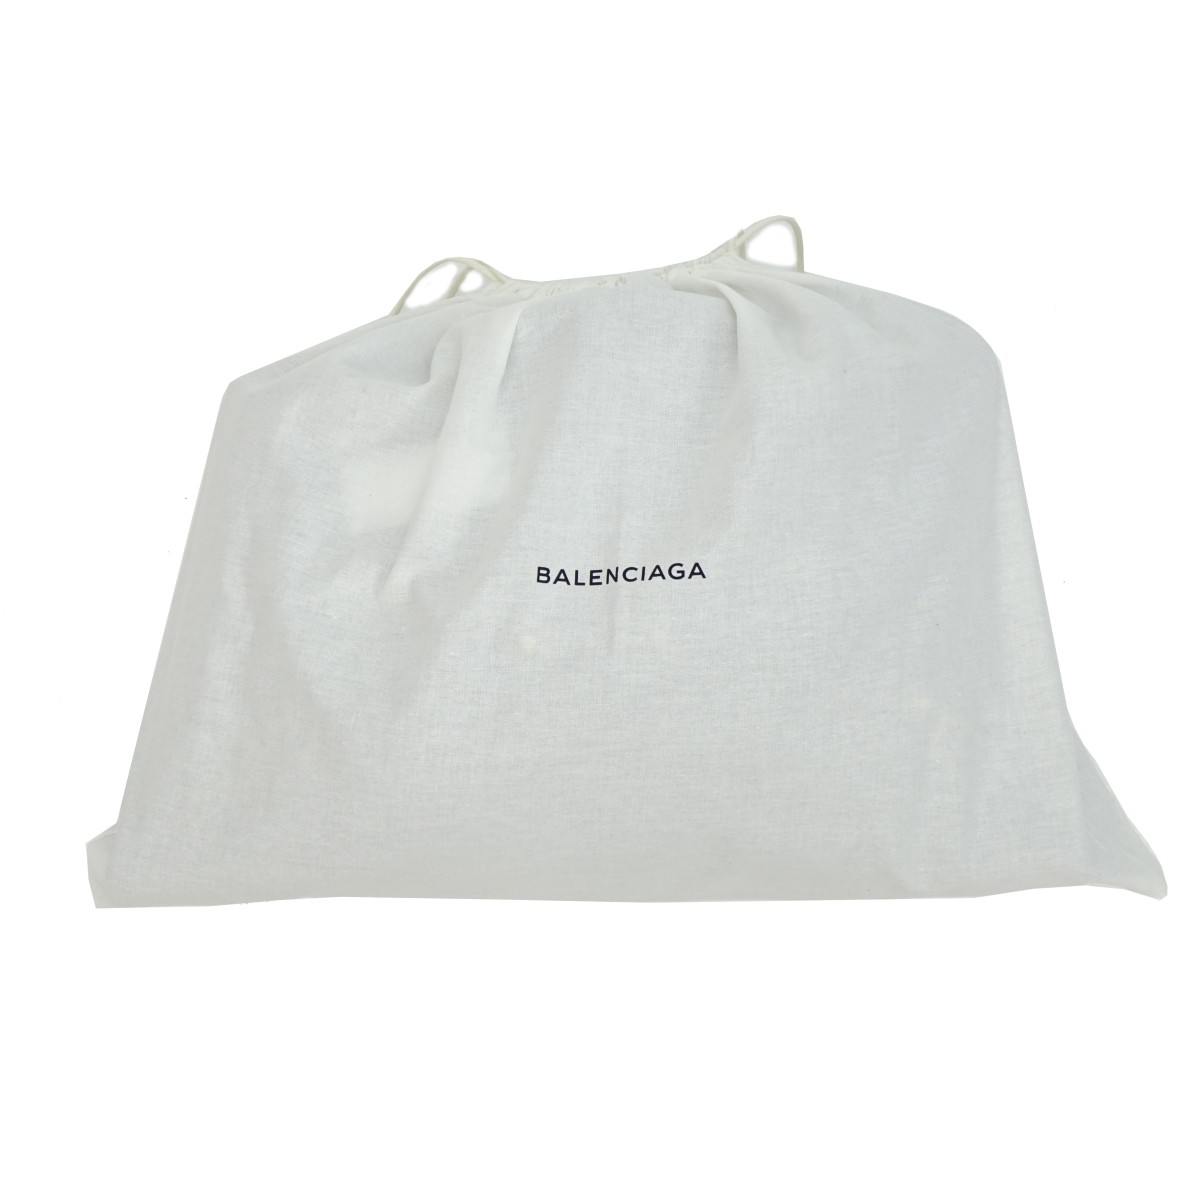 Balenciaga GH City Tote Bag